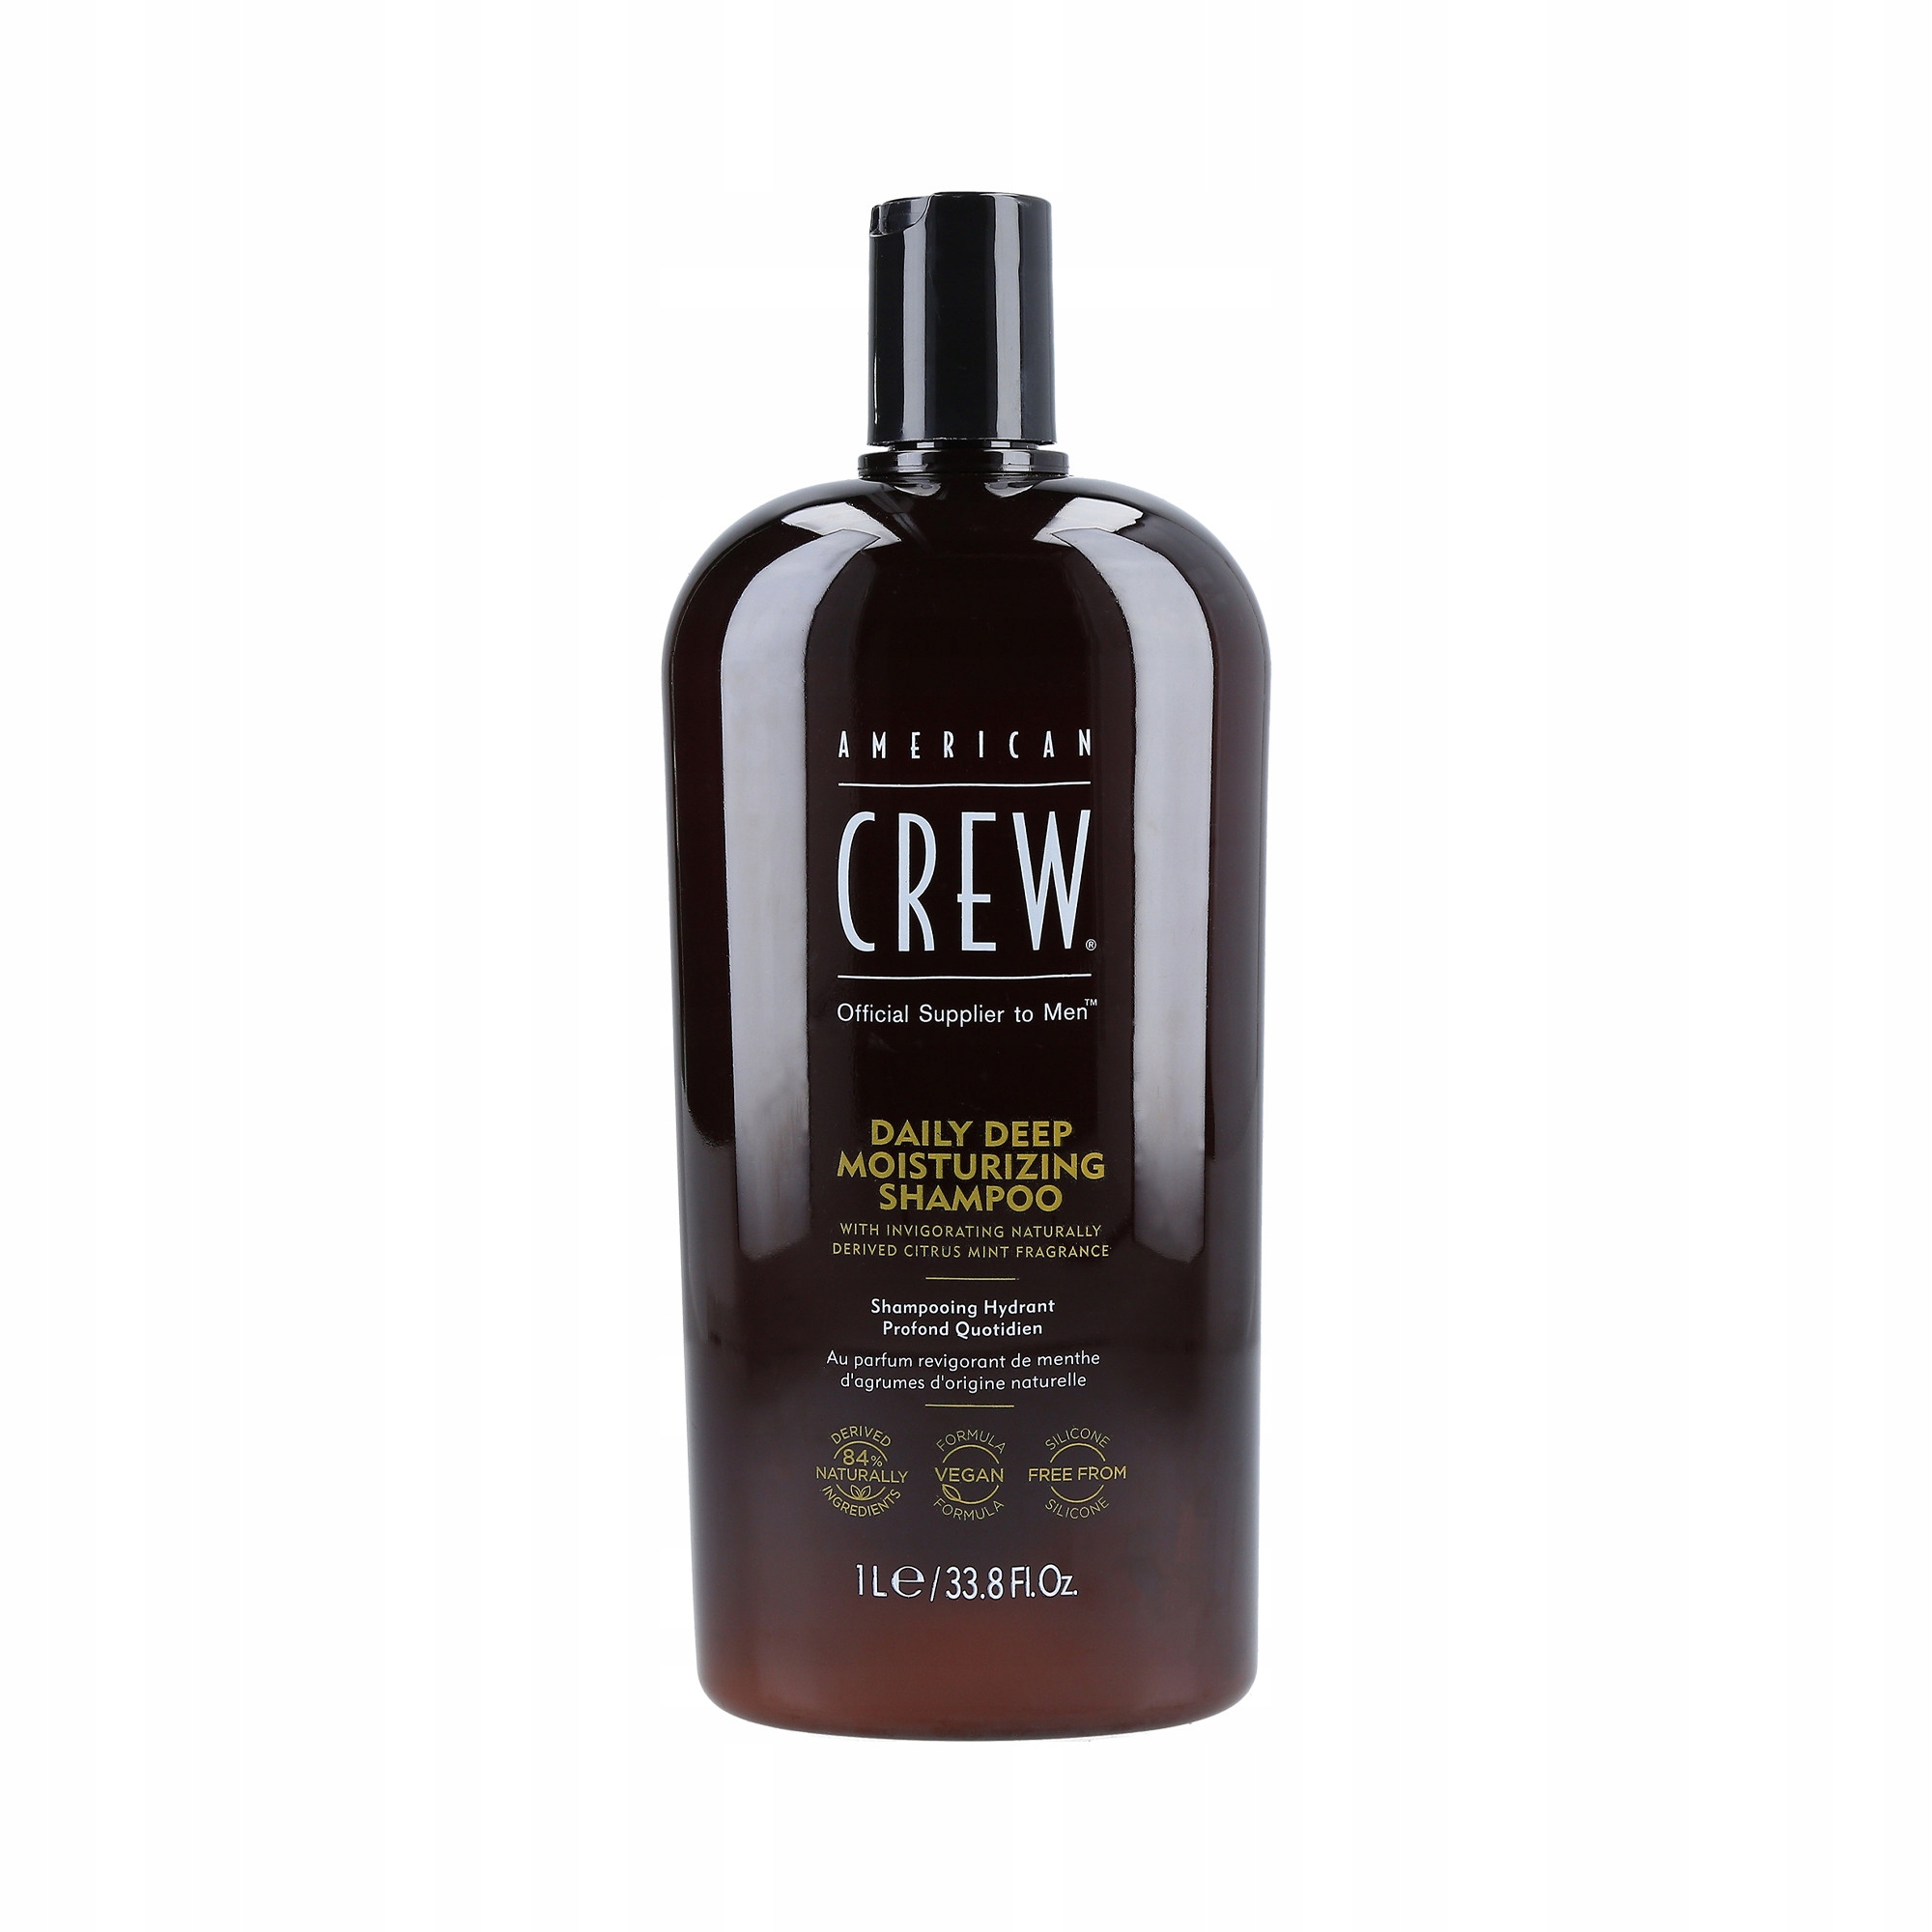 crew szampon przeciw siwym wlosom